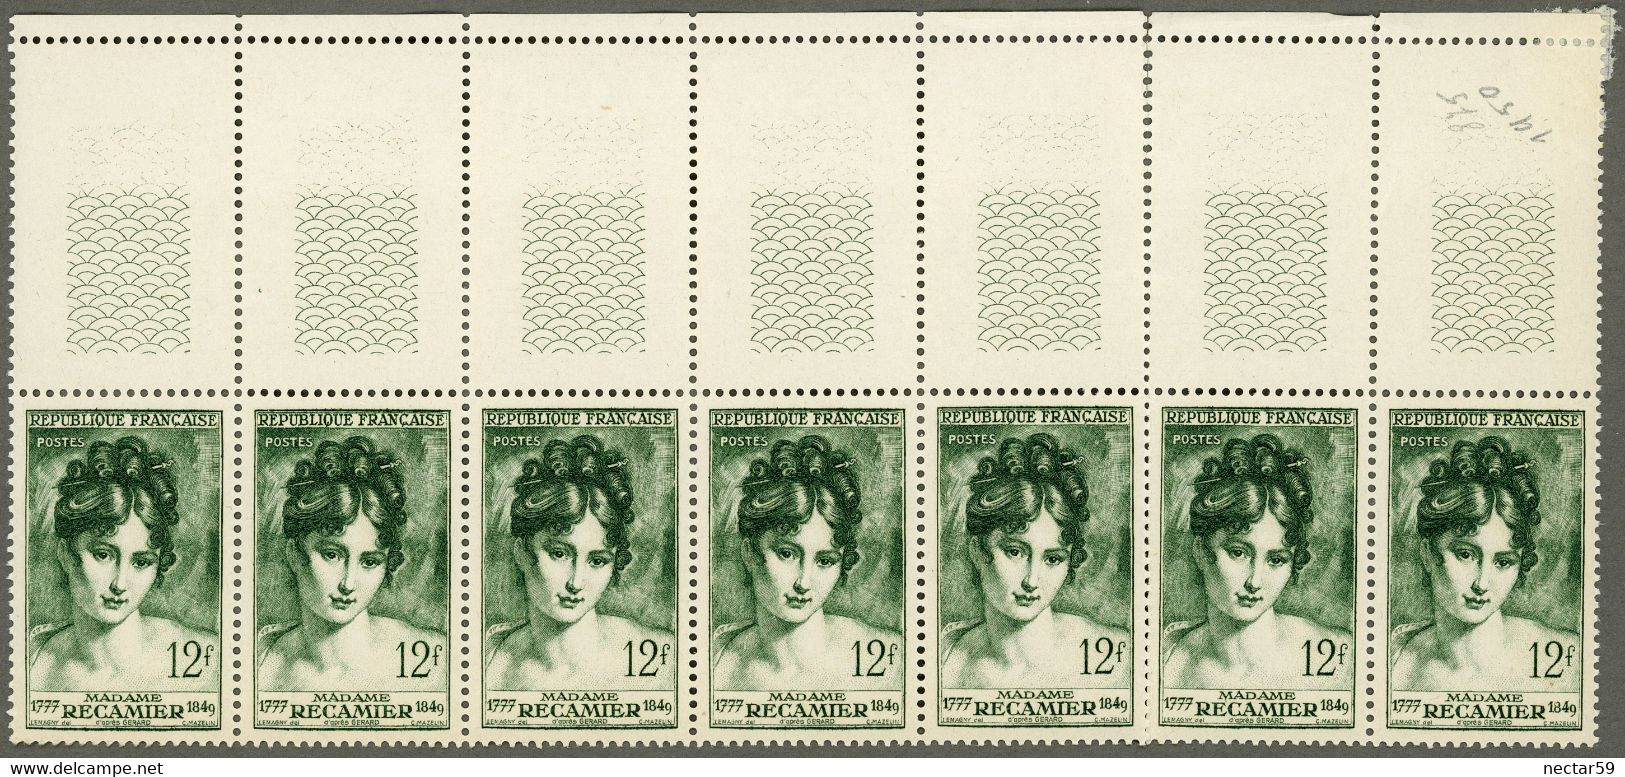 FRANCE 1950 Bloc Yt 875 Madame Récamier MNH**, 1er Empire, Napoléon, François Gérard - Unused Stamps